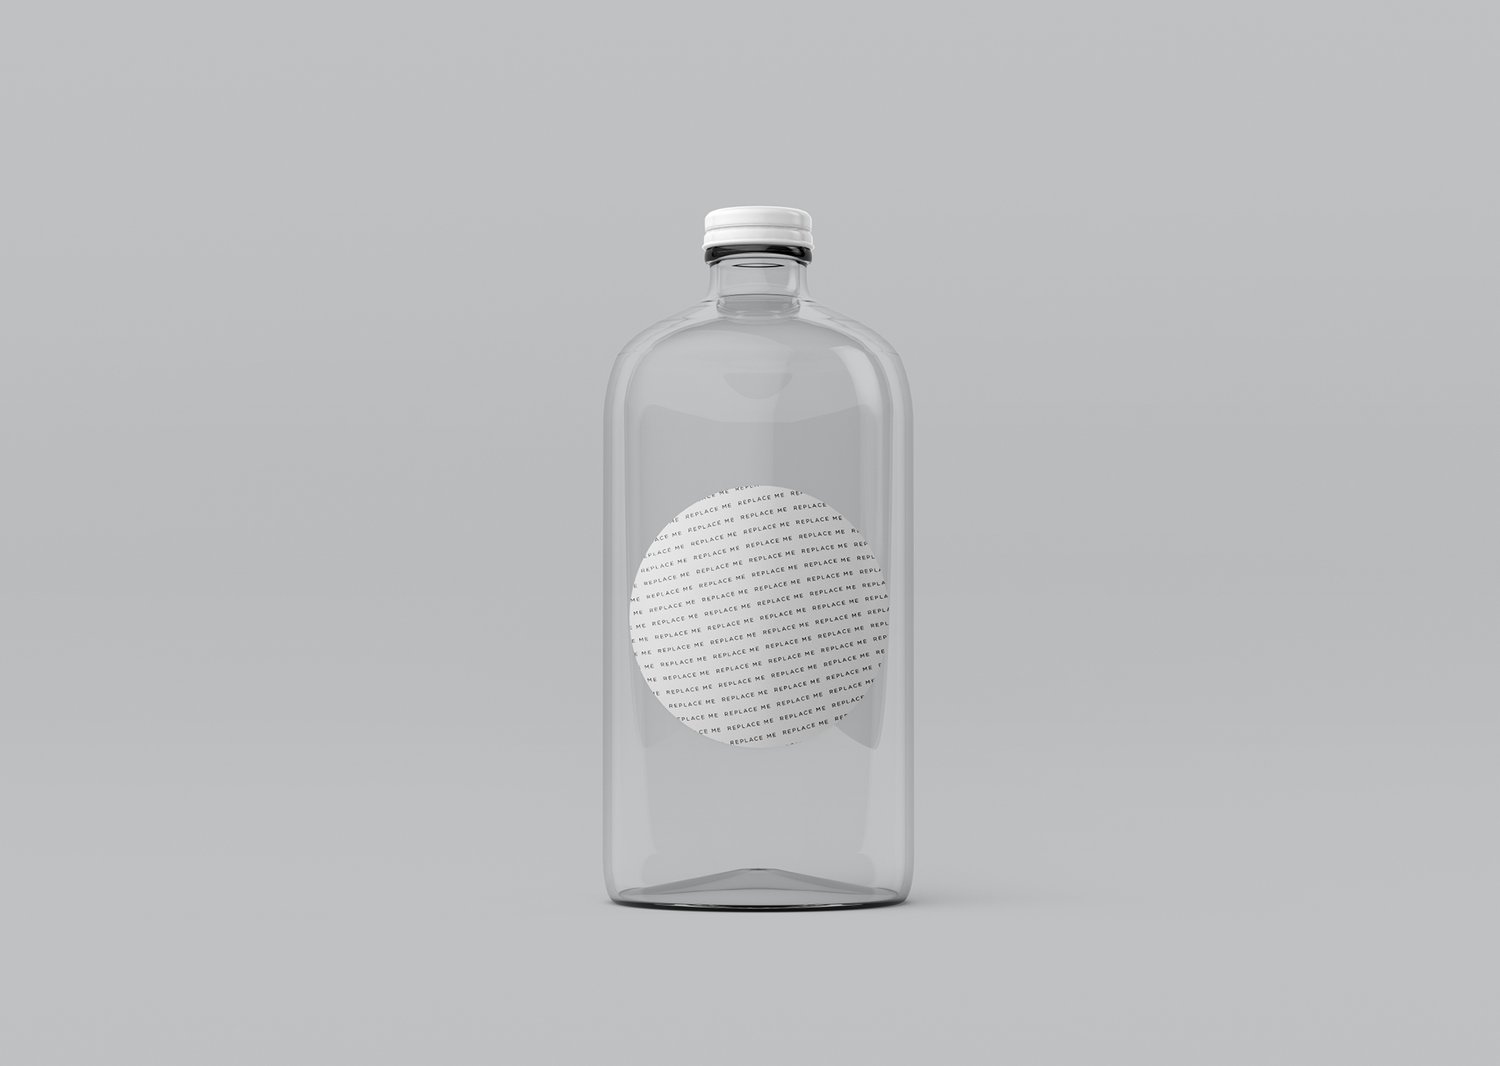 Clear glass bottle mockup